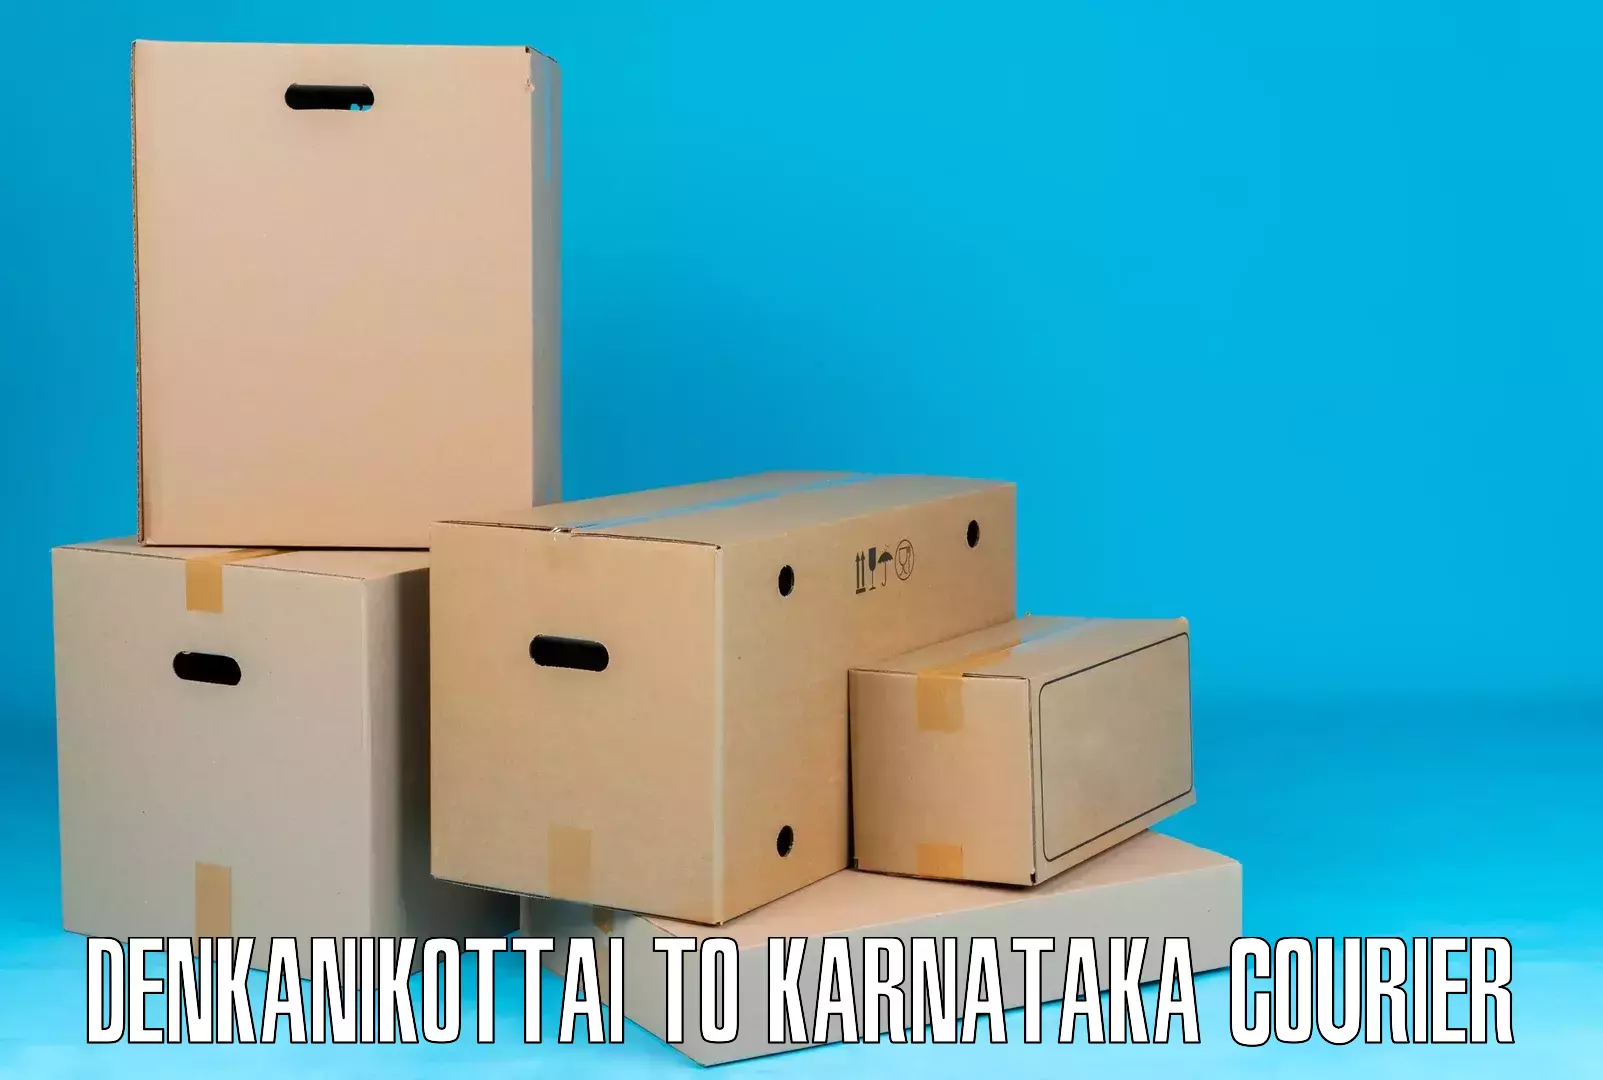 Comprehensive freight services Denkanikottai to Harpanahalli